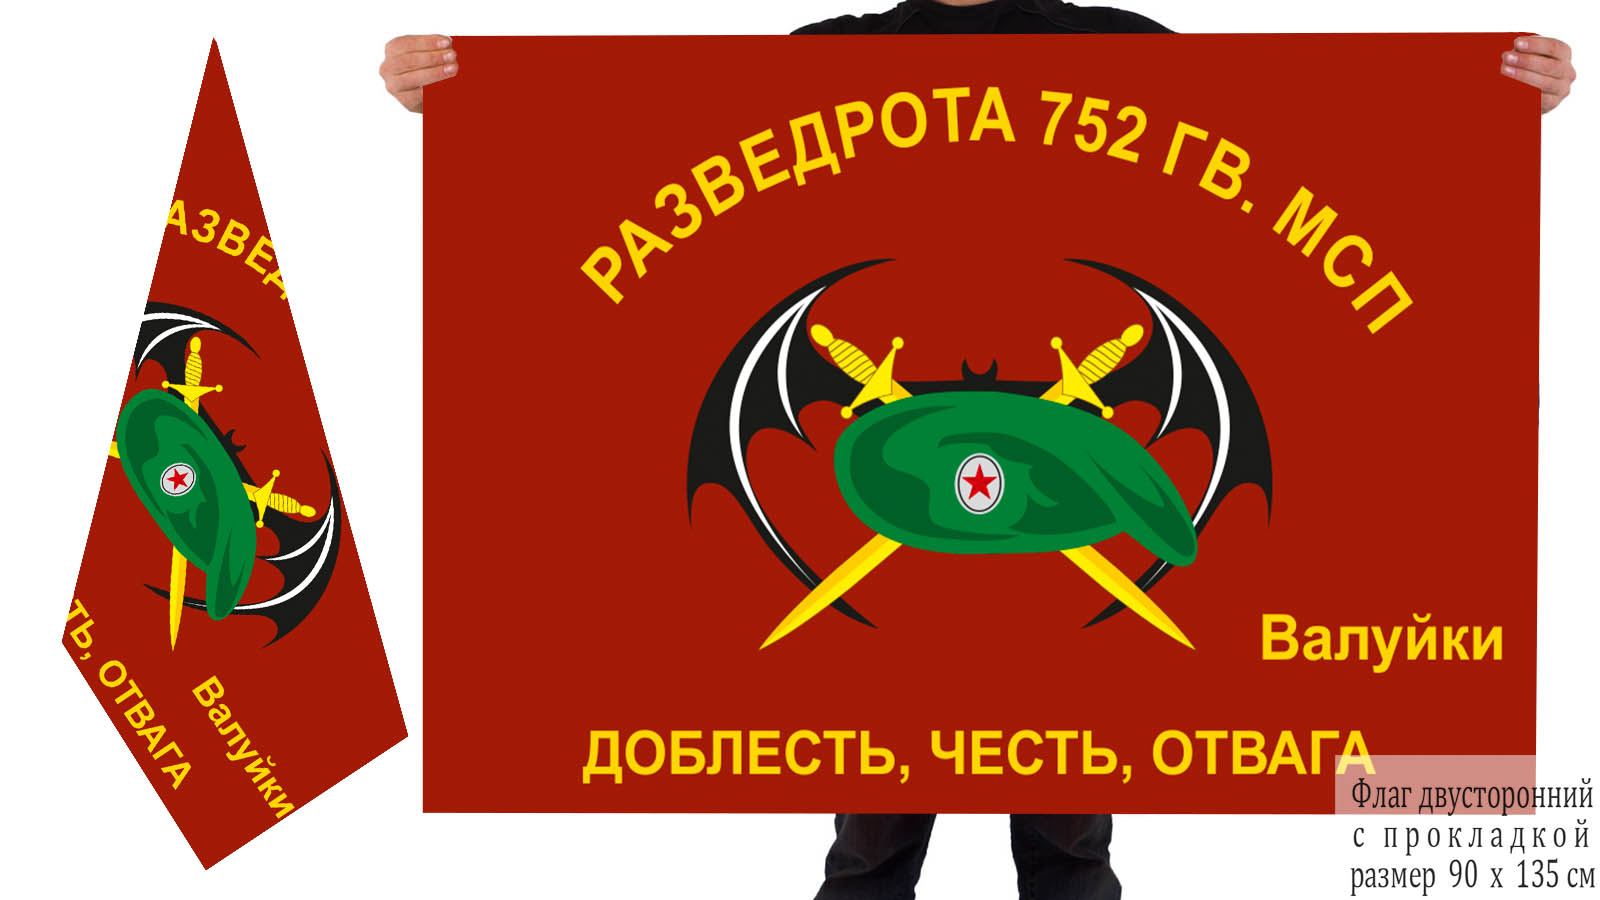  Двусторонний флаг Разведроты 752 Гв. МСП